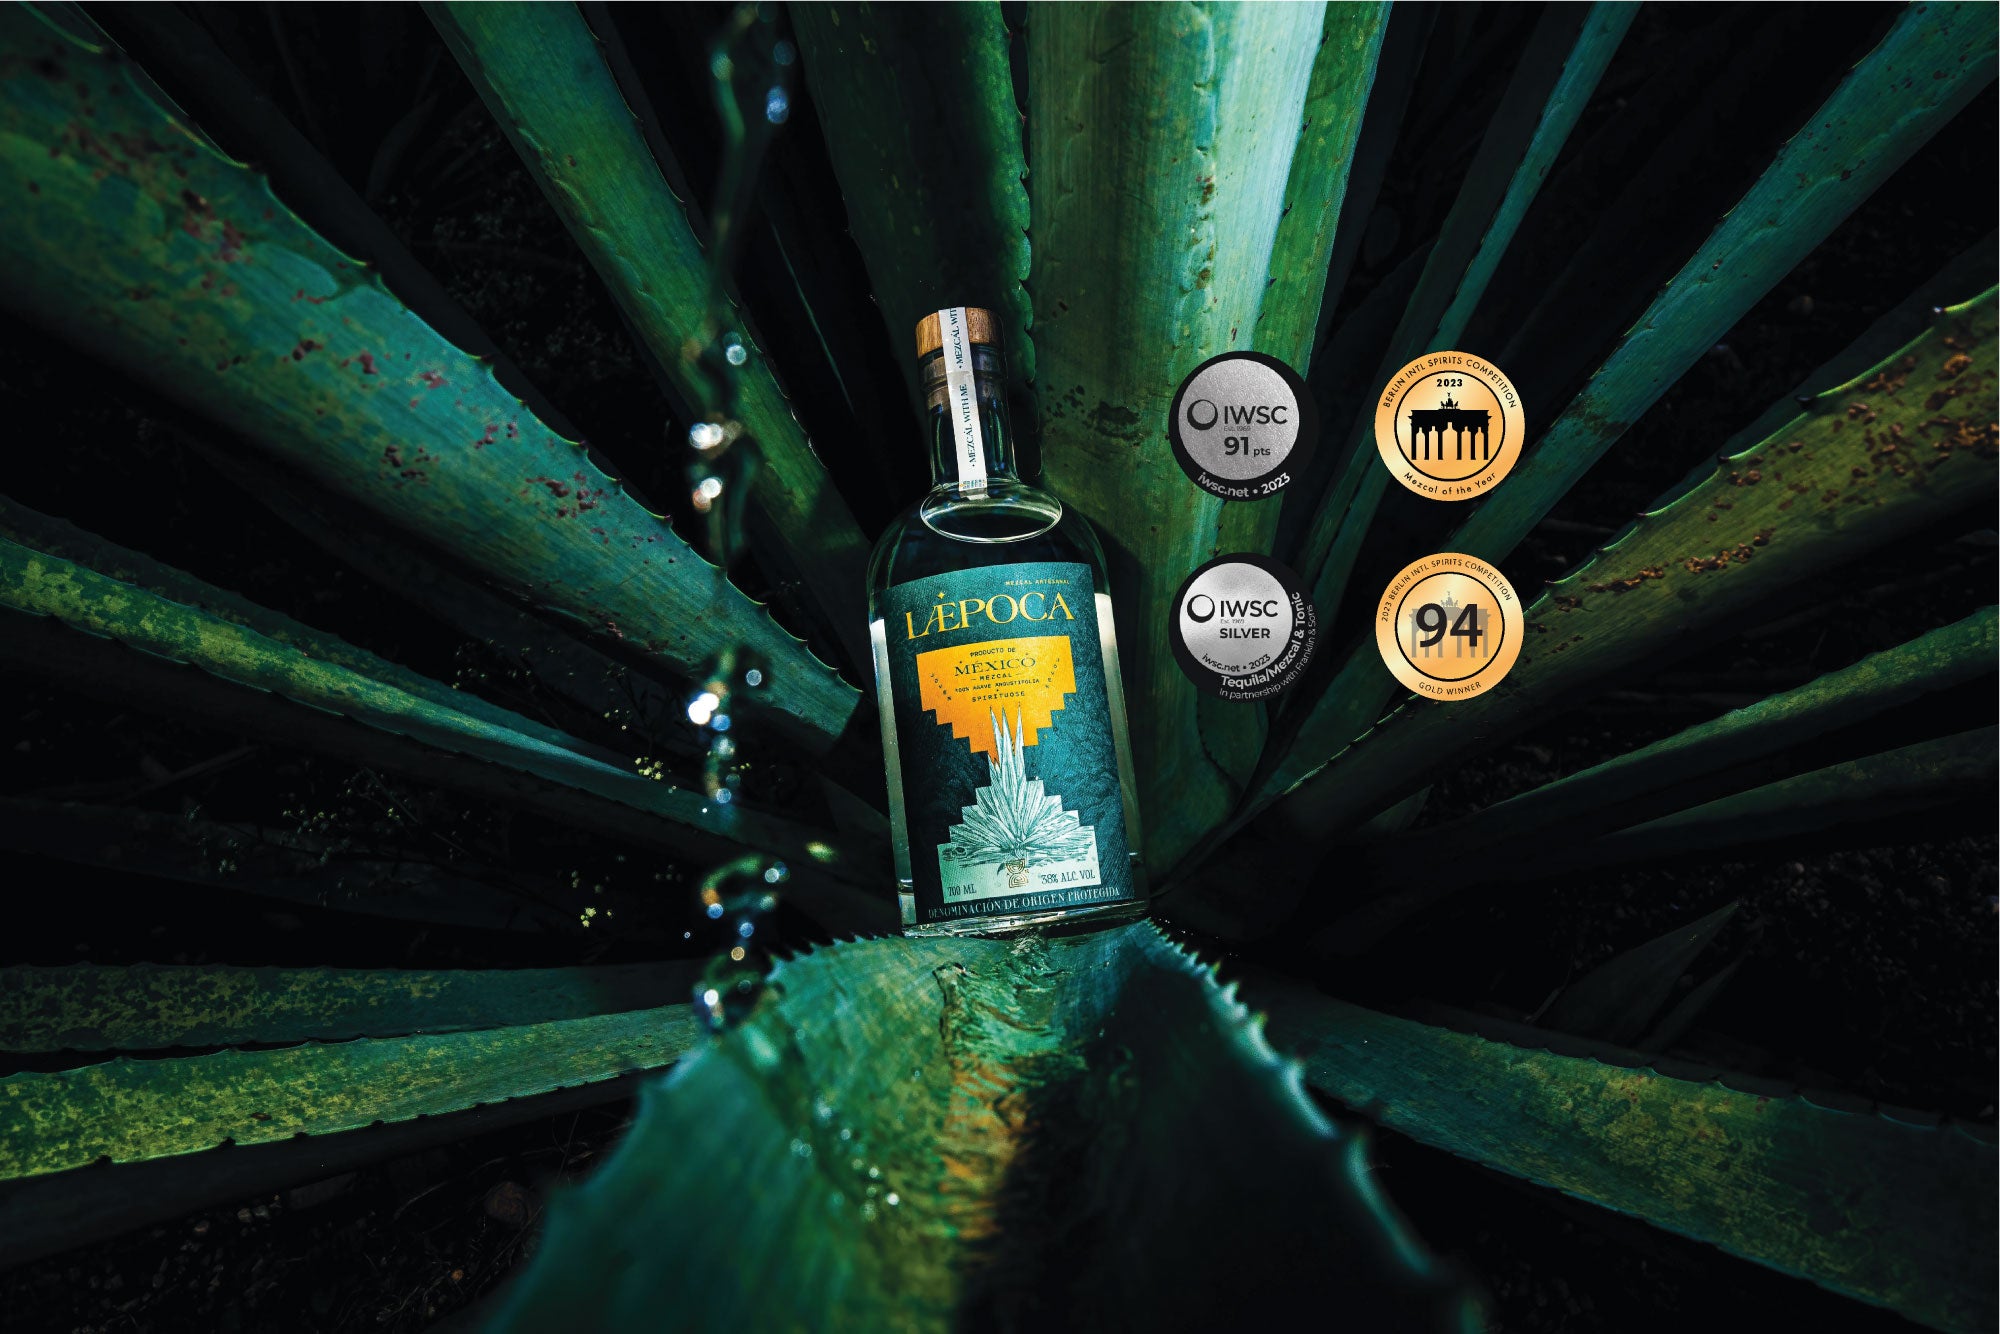 LÆPOCA Mezcal Flasche in der Mitte einer Agavenpflanze. Zudem sind vier Awards auf dem Bild zu sehen, die der Mezcal Laepoca gewonnen hat.